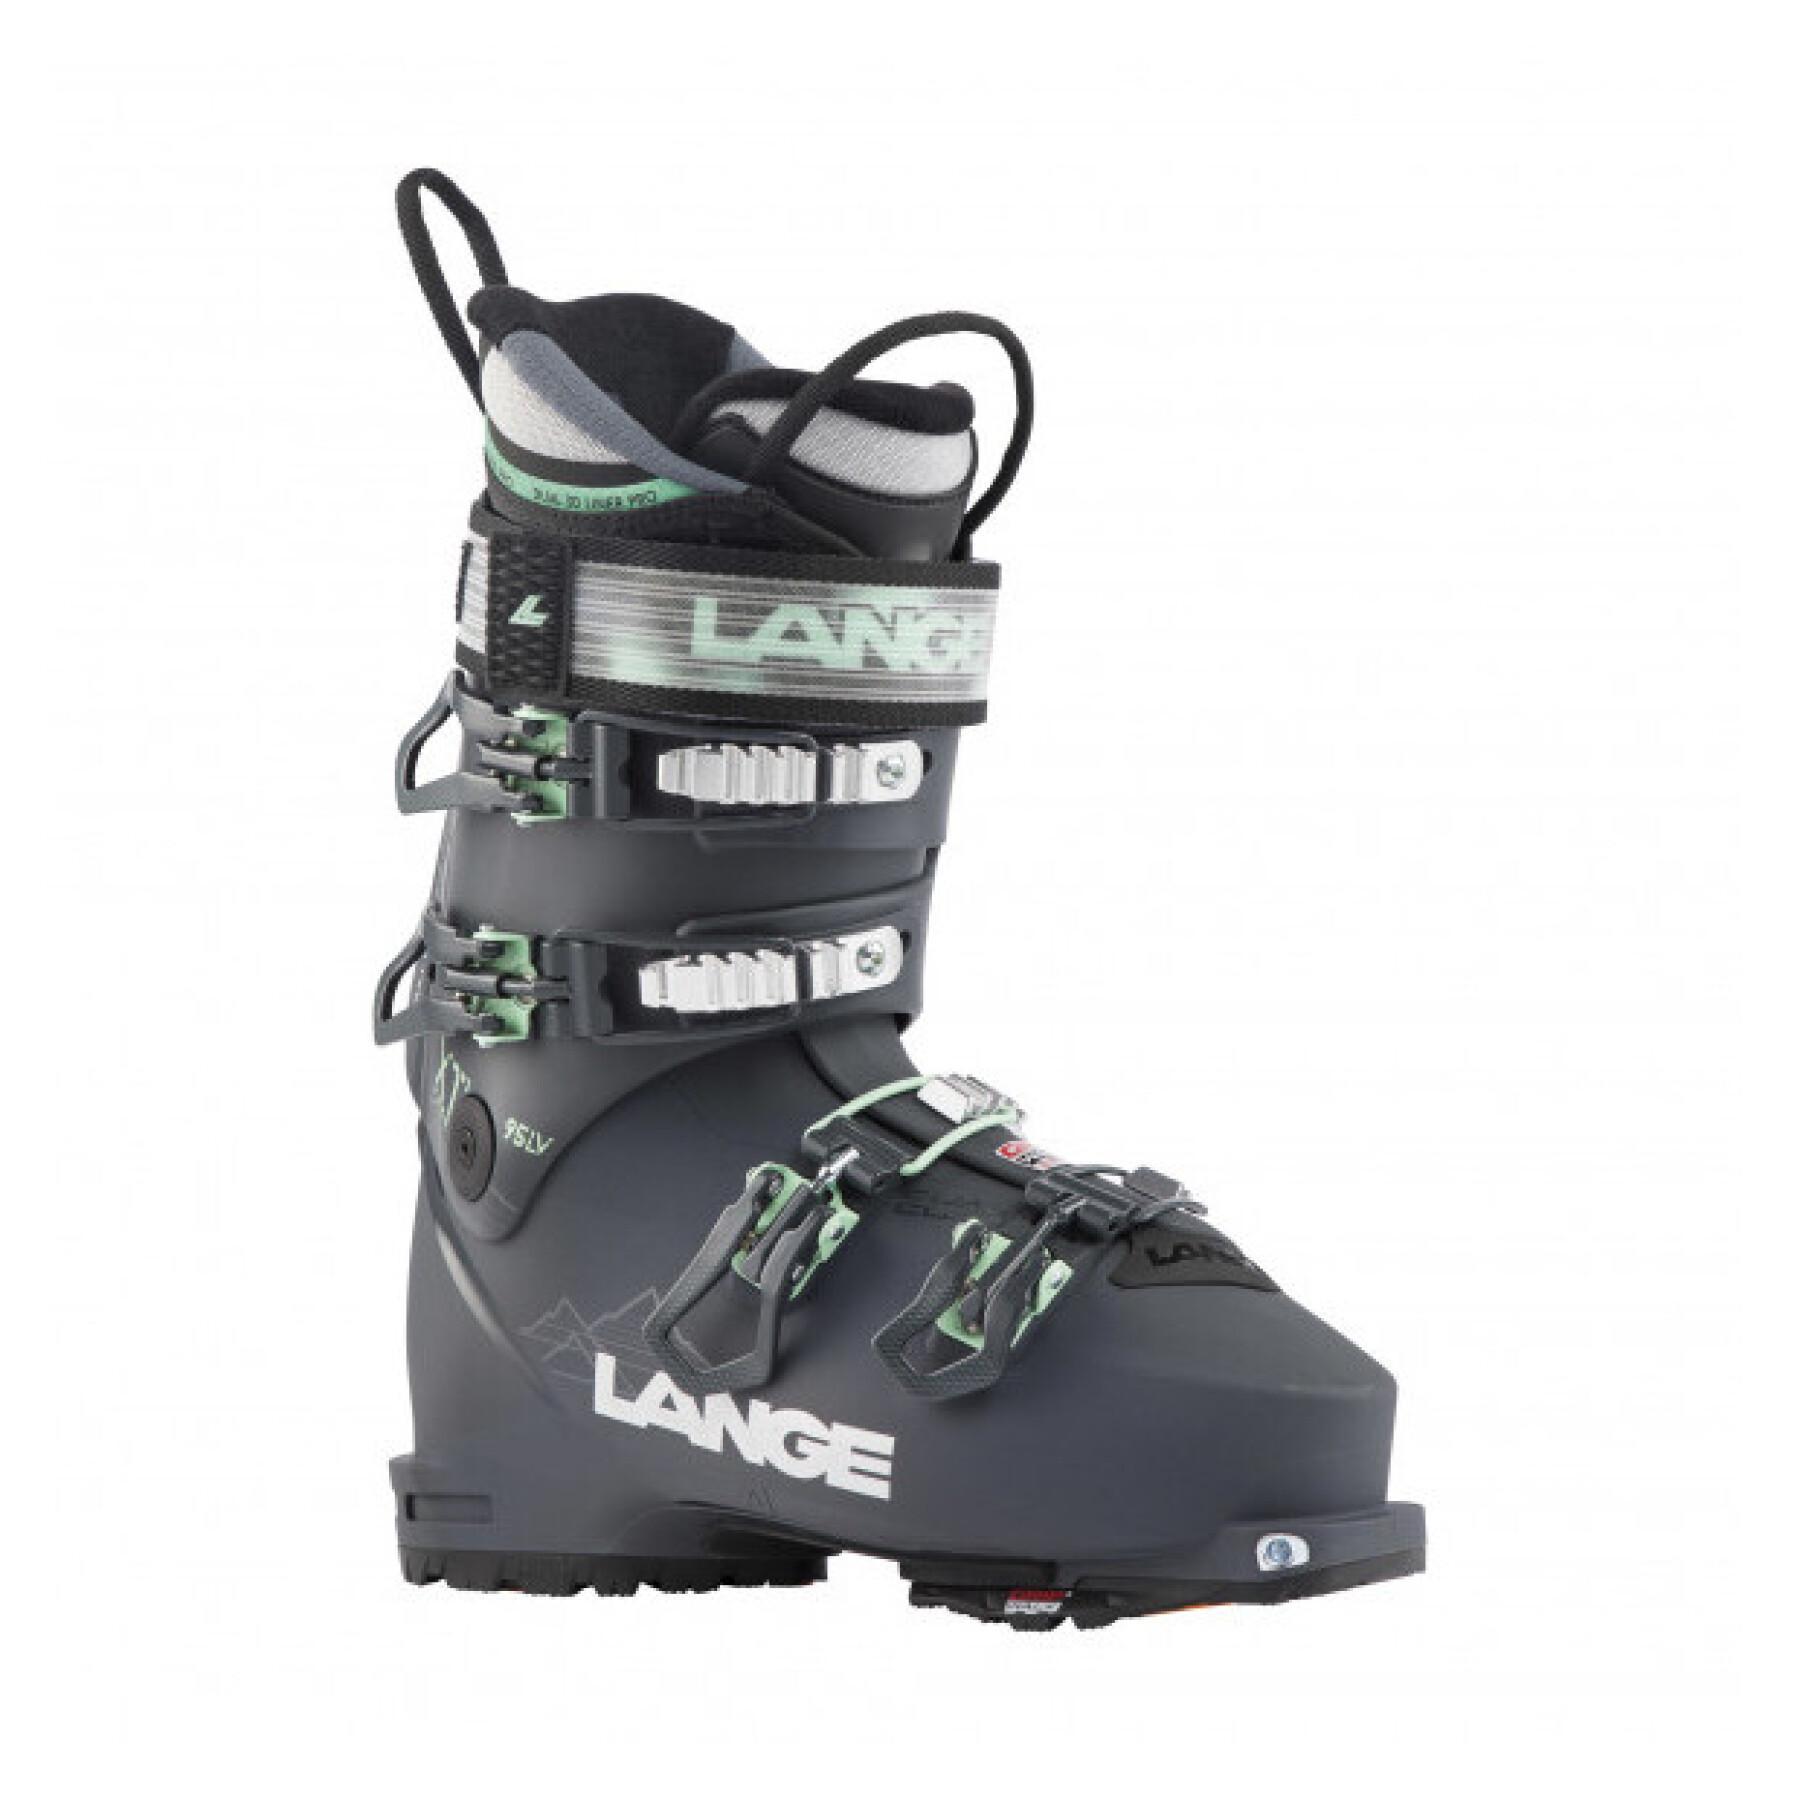 Ski boots Lange XT3 Free 95mv Gw-pewter